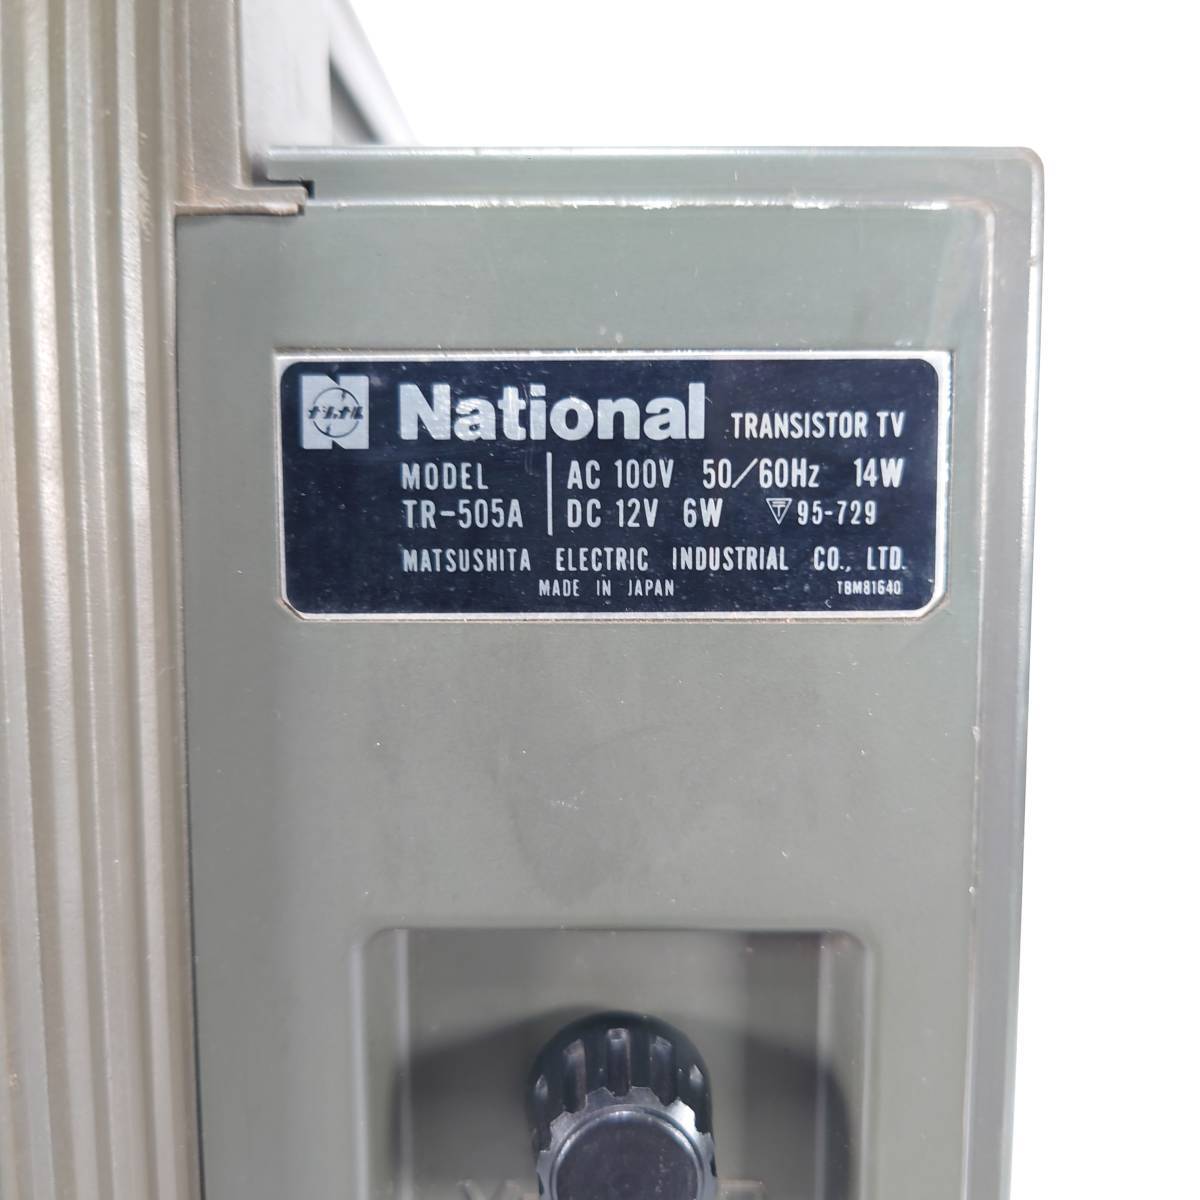 【電源確認】Nationalナショナル 白黒テレビ RANGER-505 【TR-505A 】75年製アナログテレビ 昭和レトロヴィンテージ_画像6